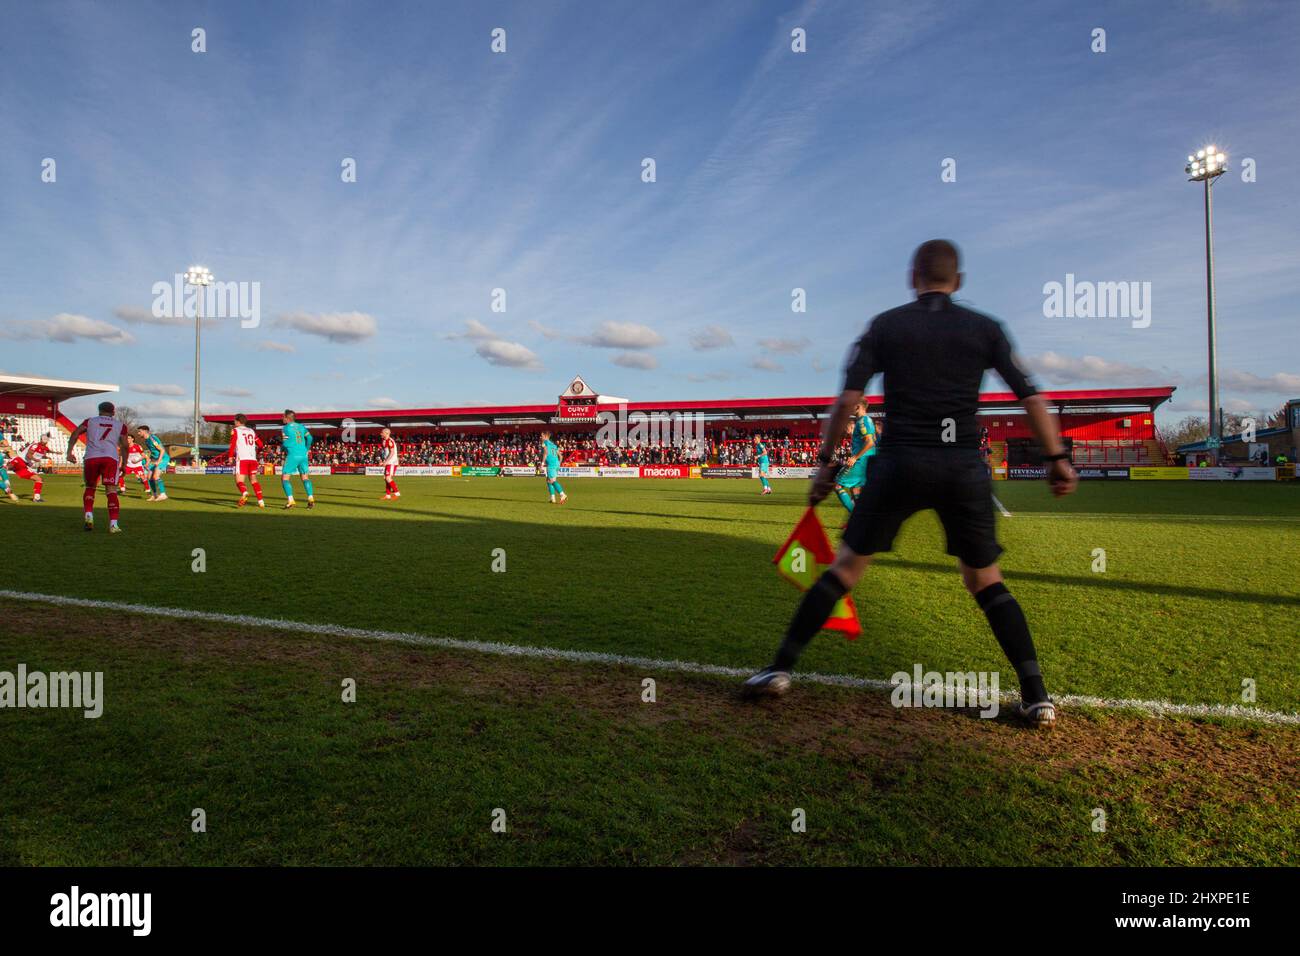 Arbitre assistant / Linesman courir la ligne au match de football. Stade Lamex, Stevenage > Hertfordshire par beau temps Banque D'Images